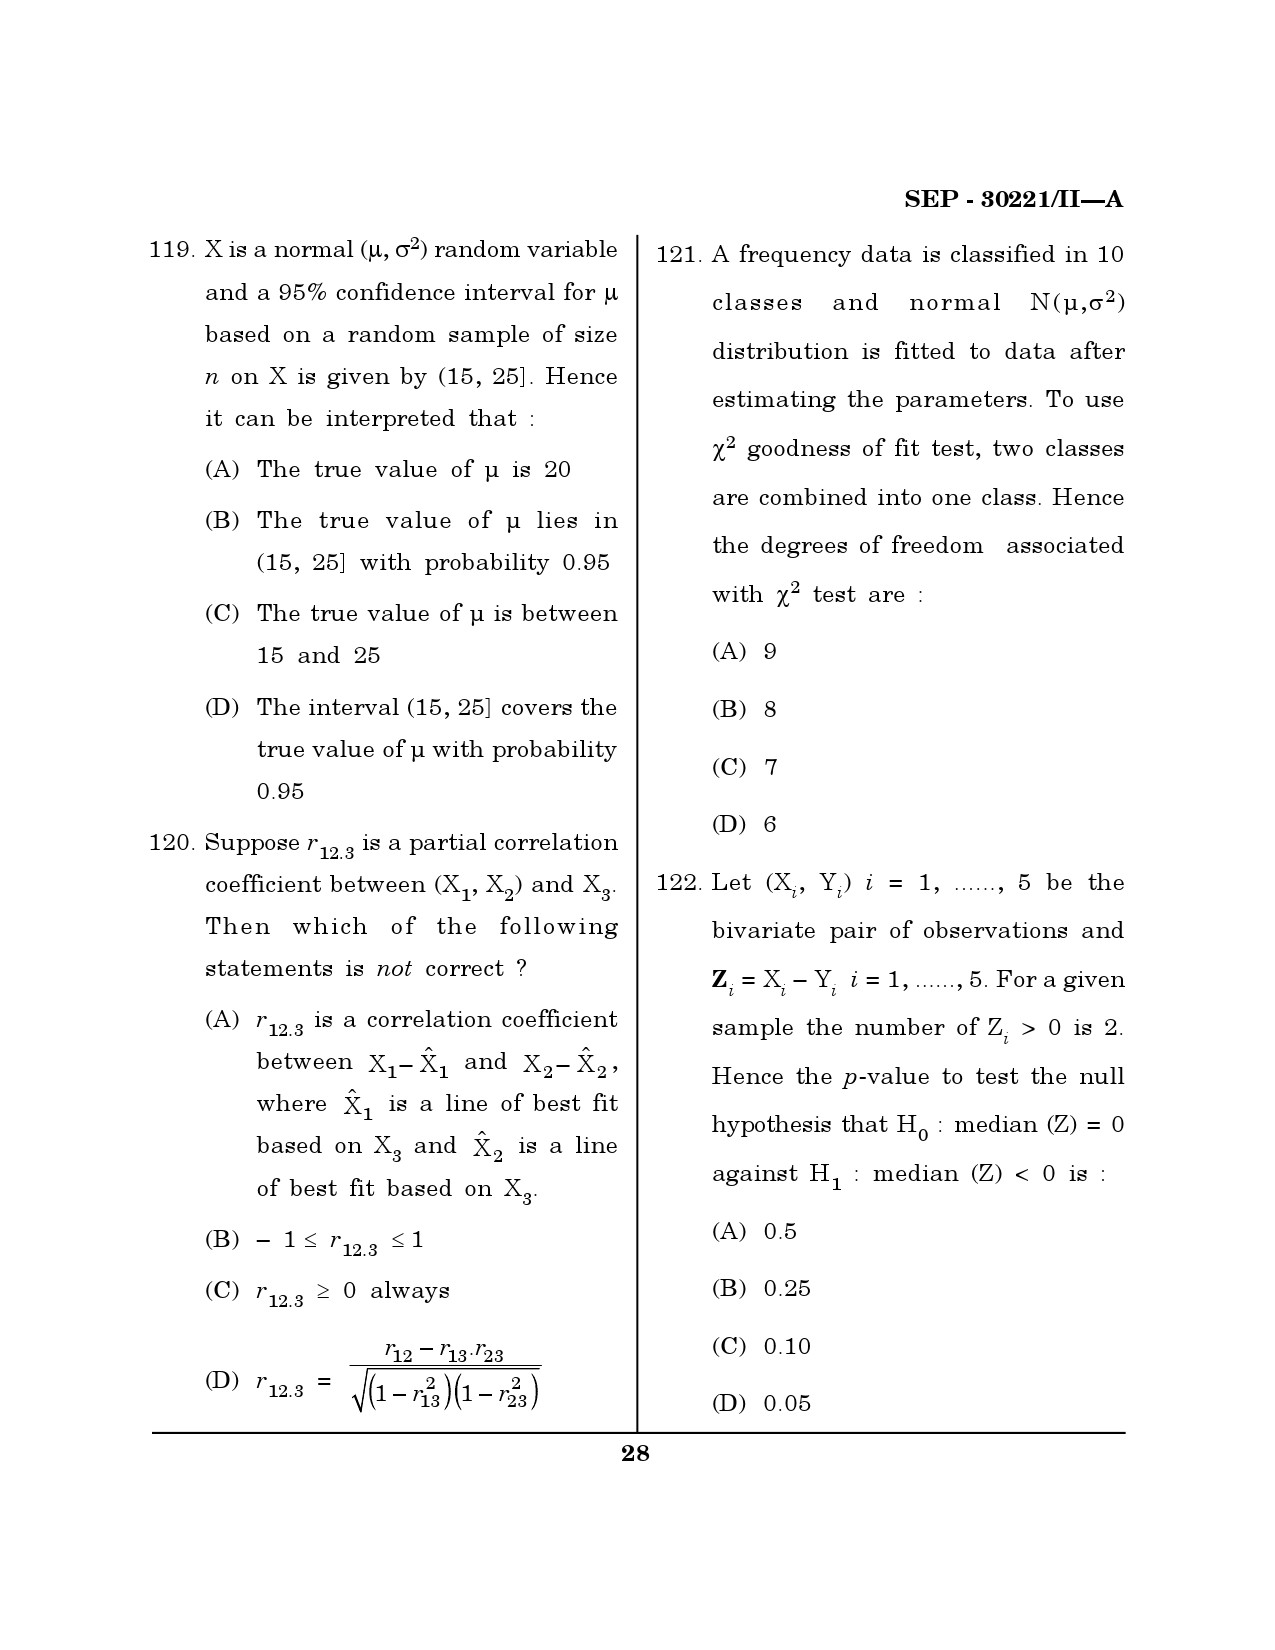 Maharashtra SET Mathematical Sciences Exam Question Paper September 2021 27